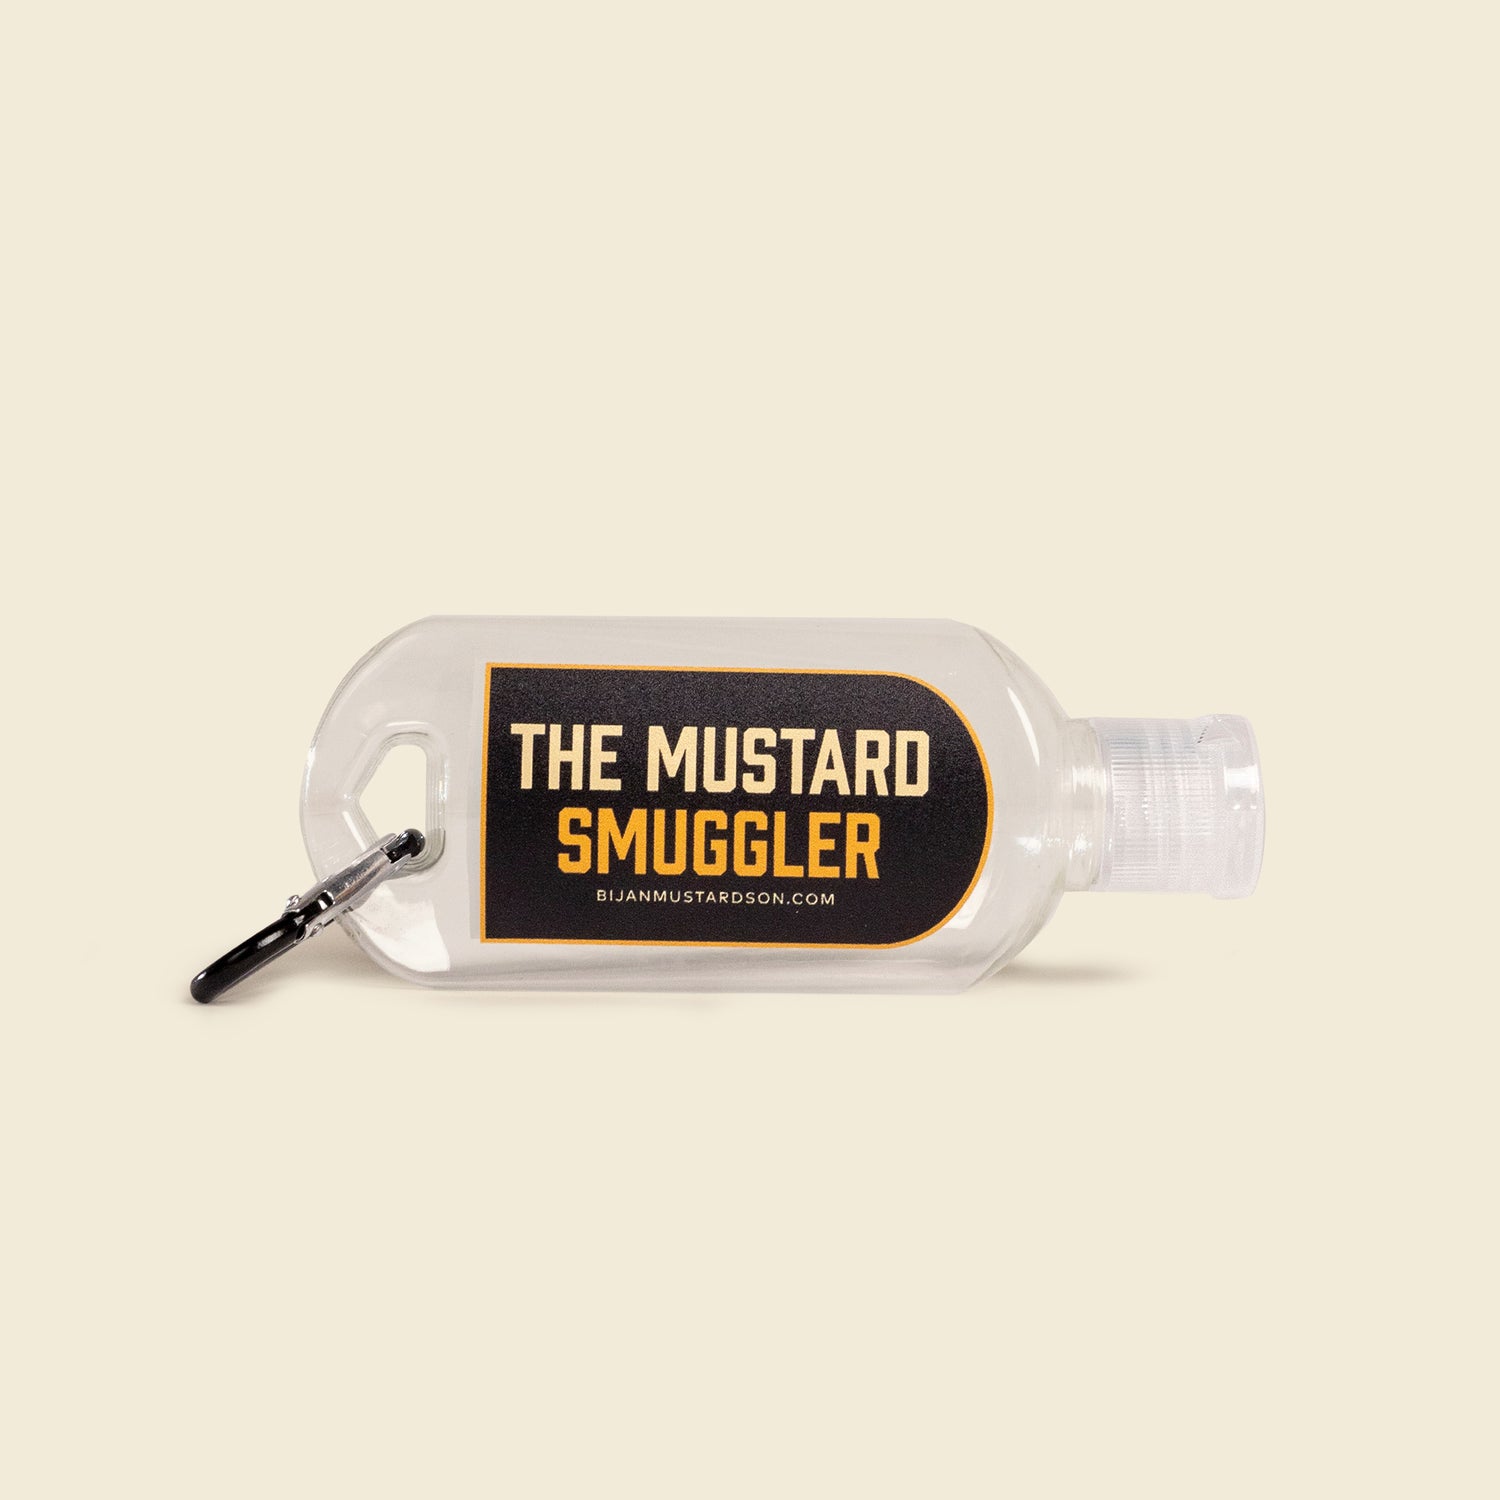 Mustard Smuggler